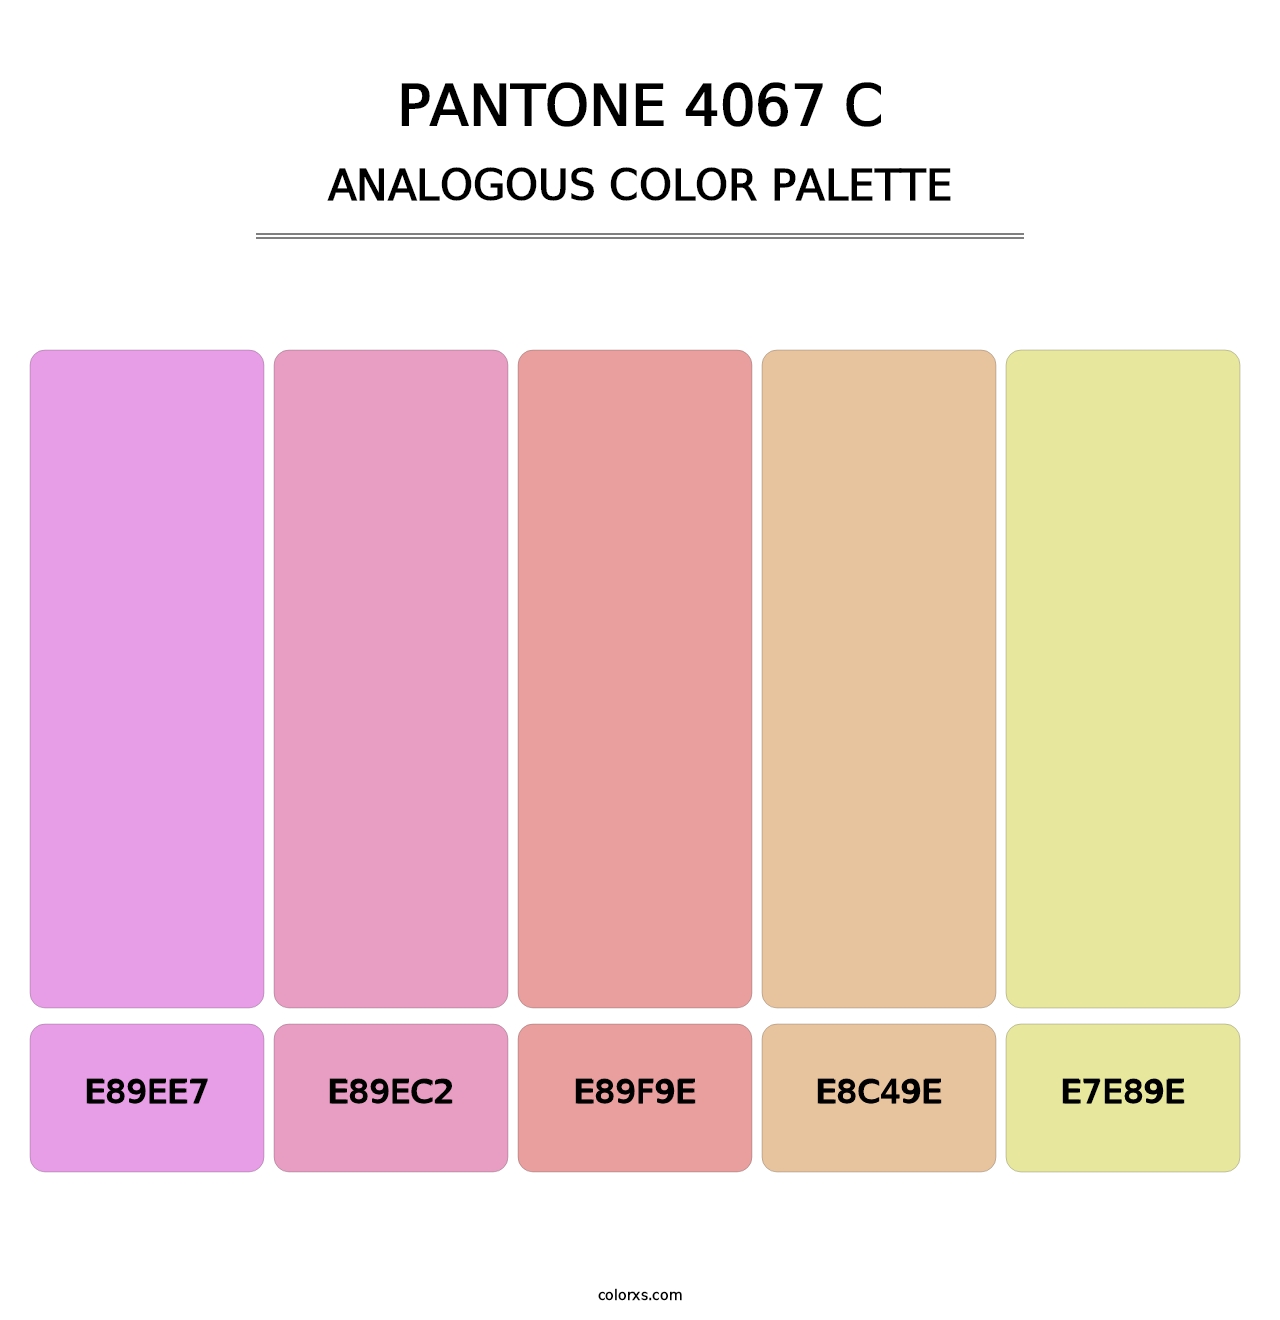 PANTONE 4067 C - Analogous Color Palette